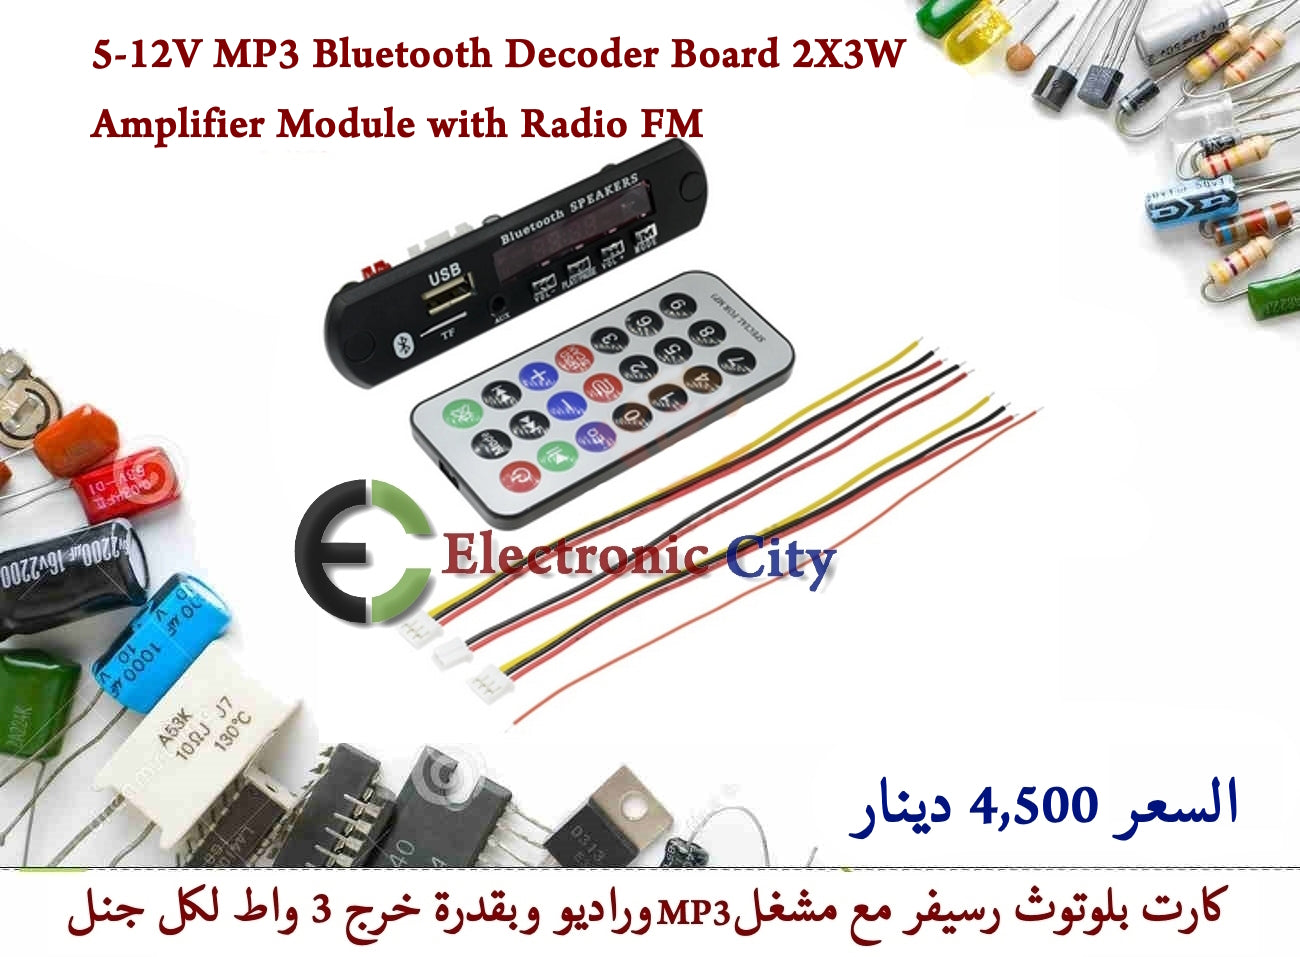 5-12V MP3 Bluetooth Decoder Board 2X3W Amplifier Module with Radio FM #L1 X12980 - 010977